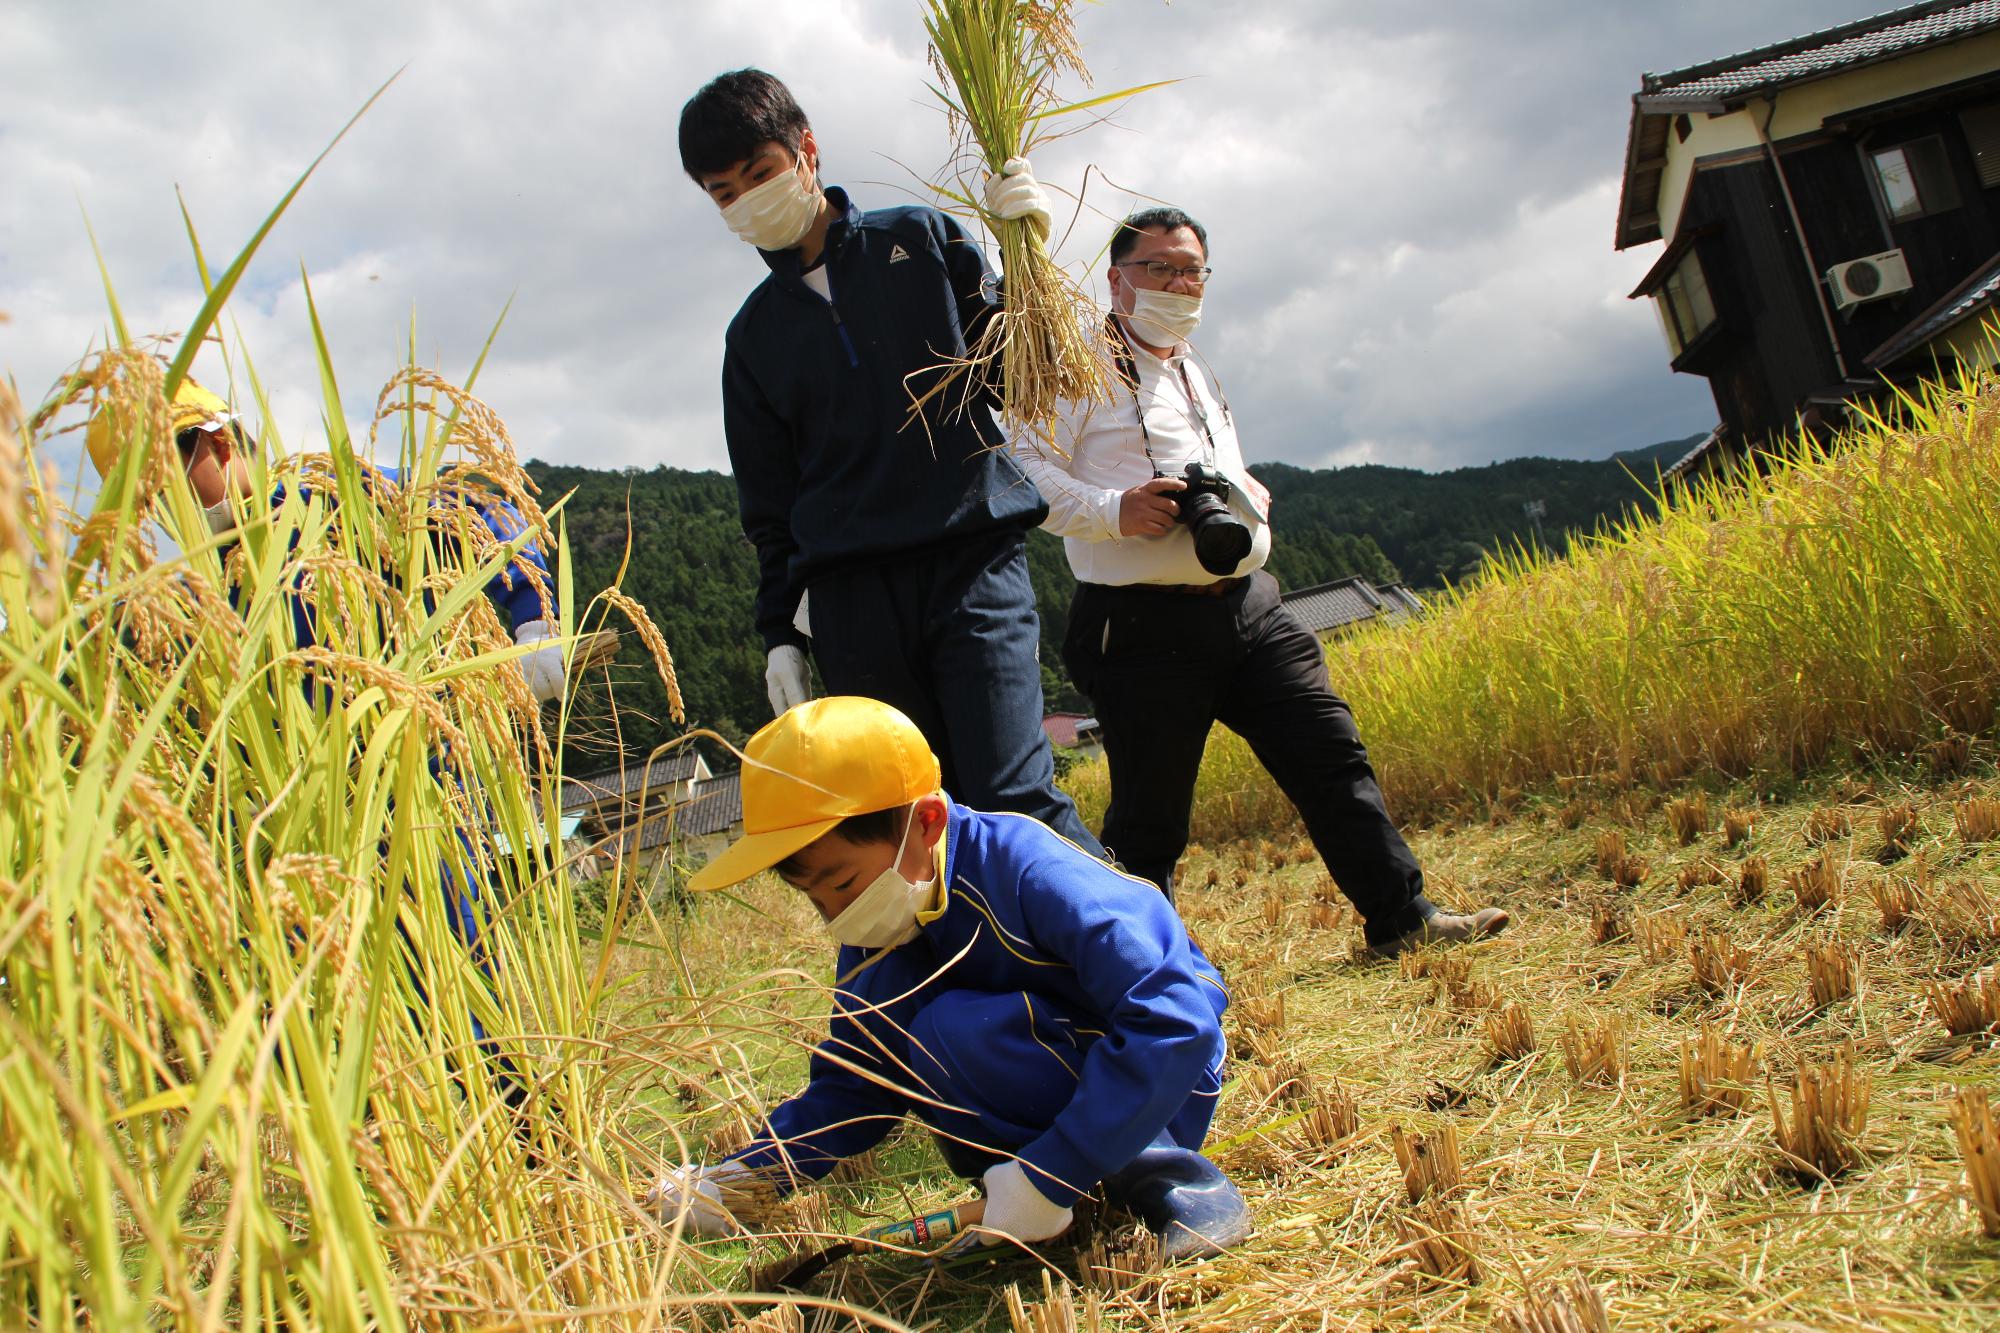 鎌を使って稲を刈っている小学生とそれをサポートしている高校生の写真